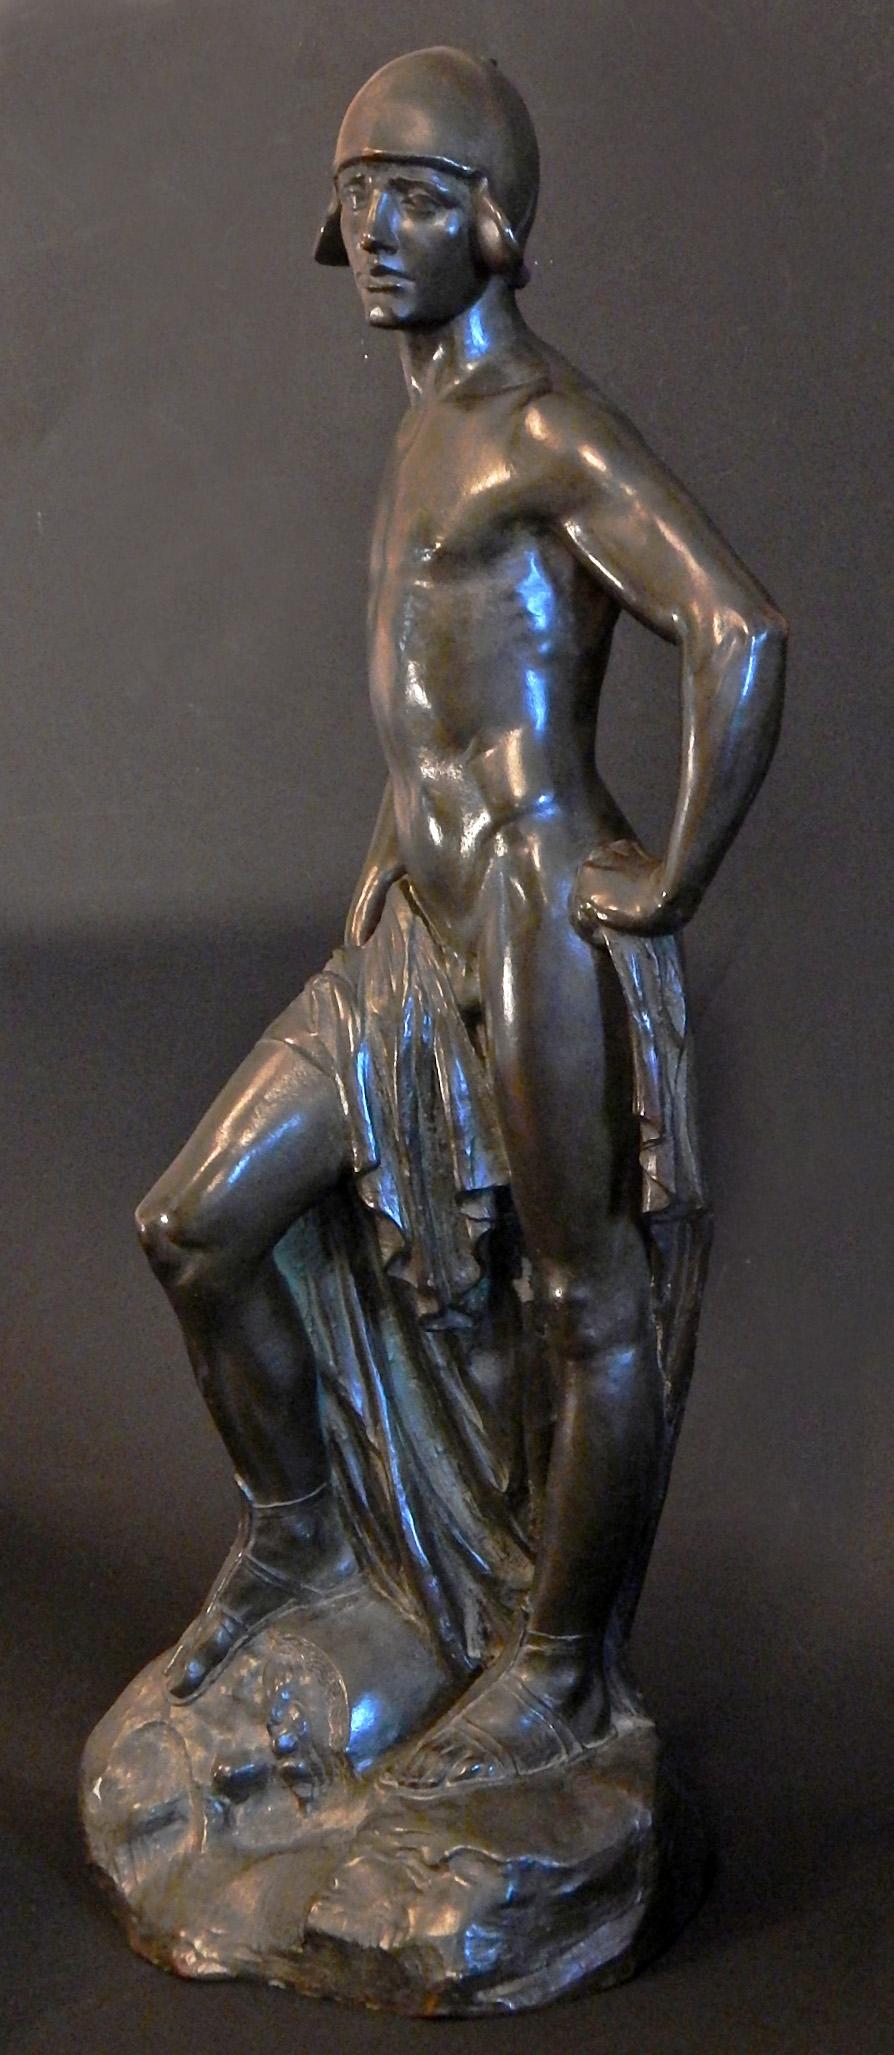 L'un des bronzes les plus finement sculptés et exécutés que nous ayons jamais proposés, cette sculpture de 22 pouces représente David comme un jeune homme beau et souple, une petite pierre à la main, prêt à lancer sur Goliath. David est une figure